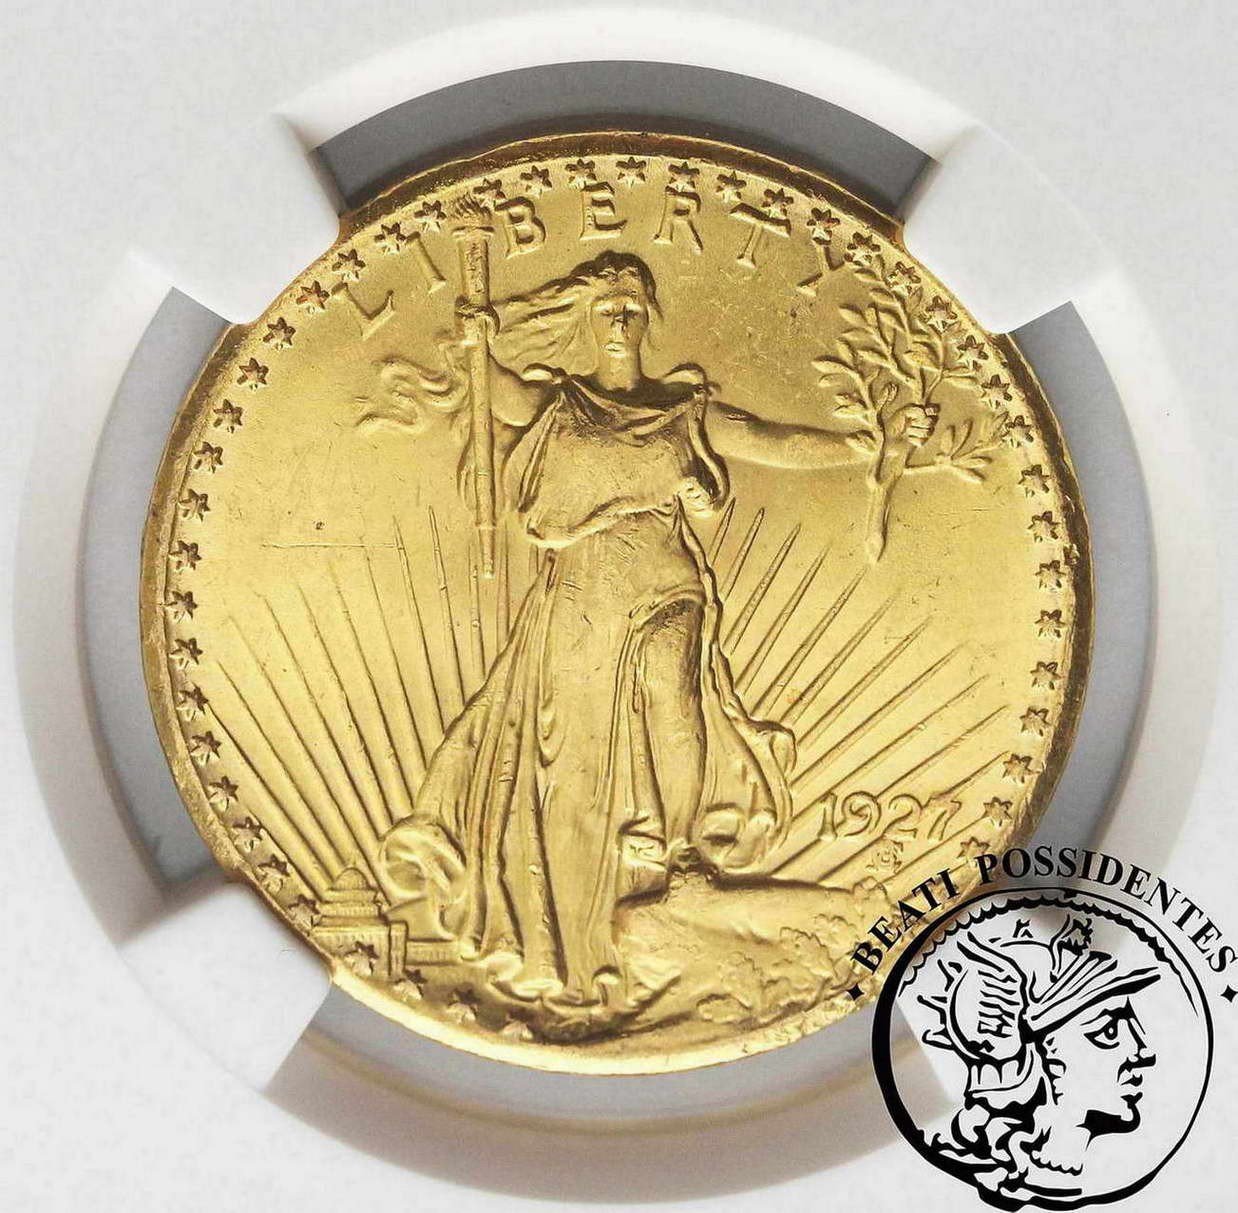 USA 20 dolarów 1927 Philadelphia  NGS MS 64